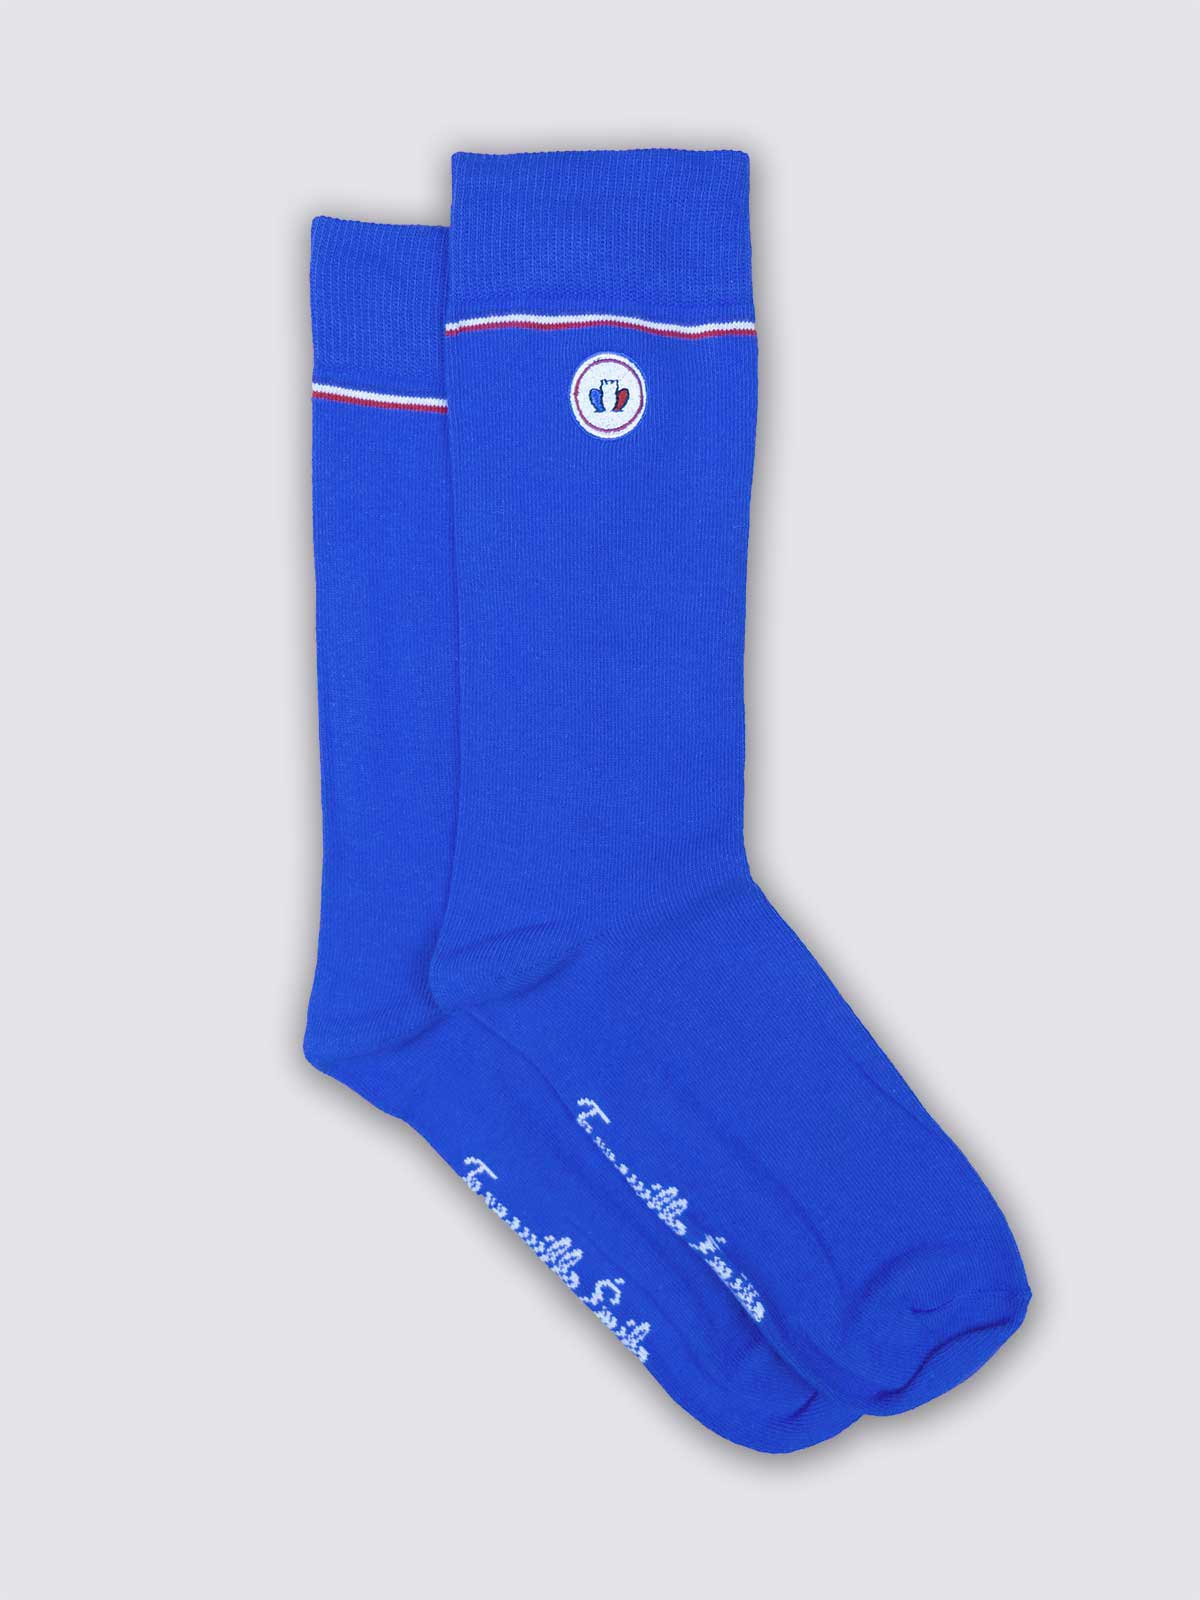 chaussettes-made-in-france-les-unies-bleu-electrique-1